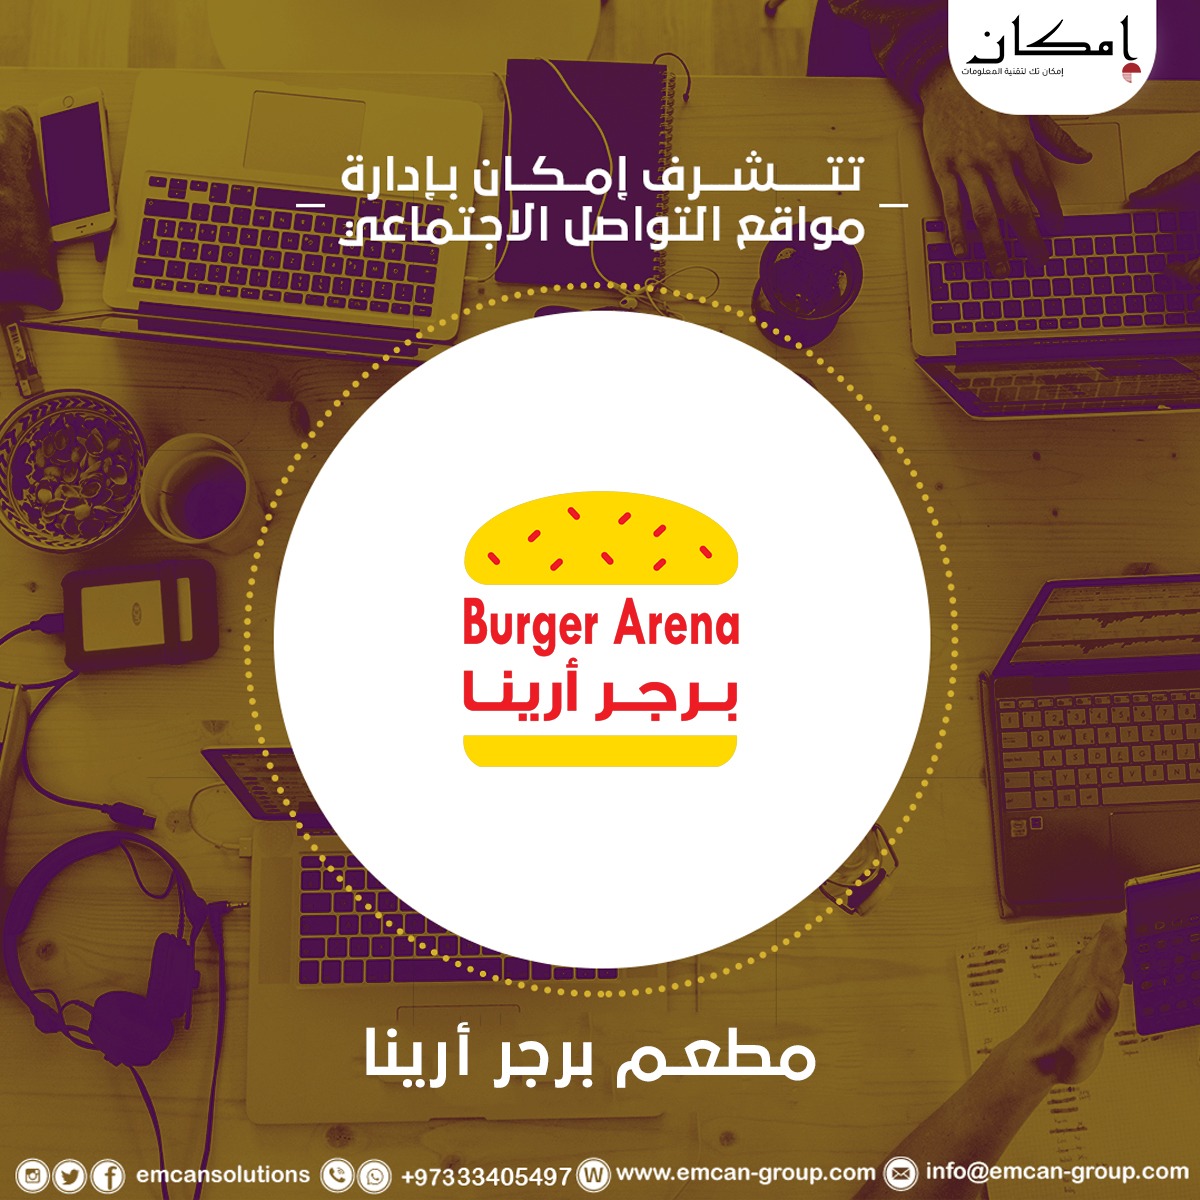 Social media management for Burger Arena restaurant